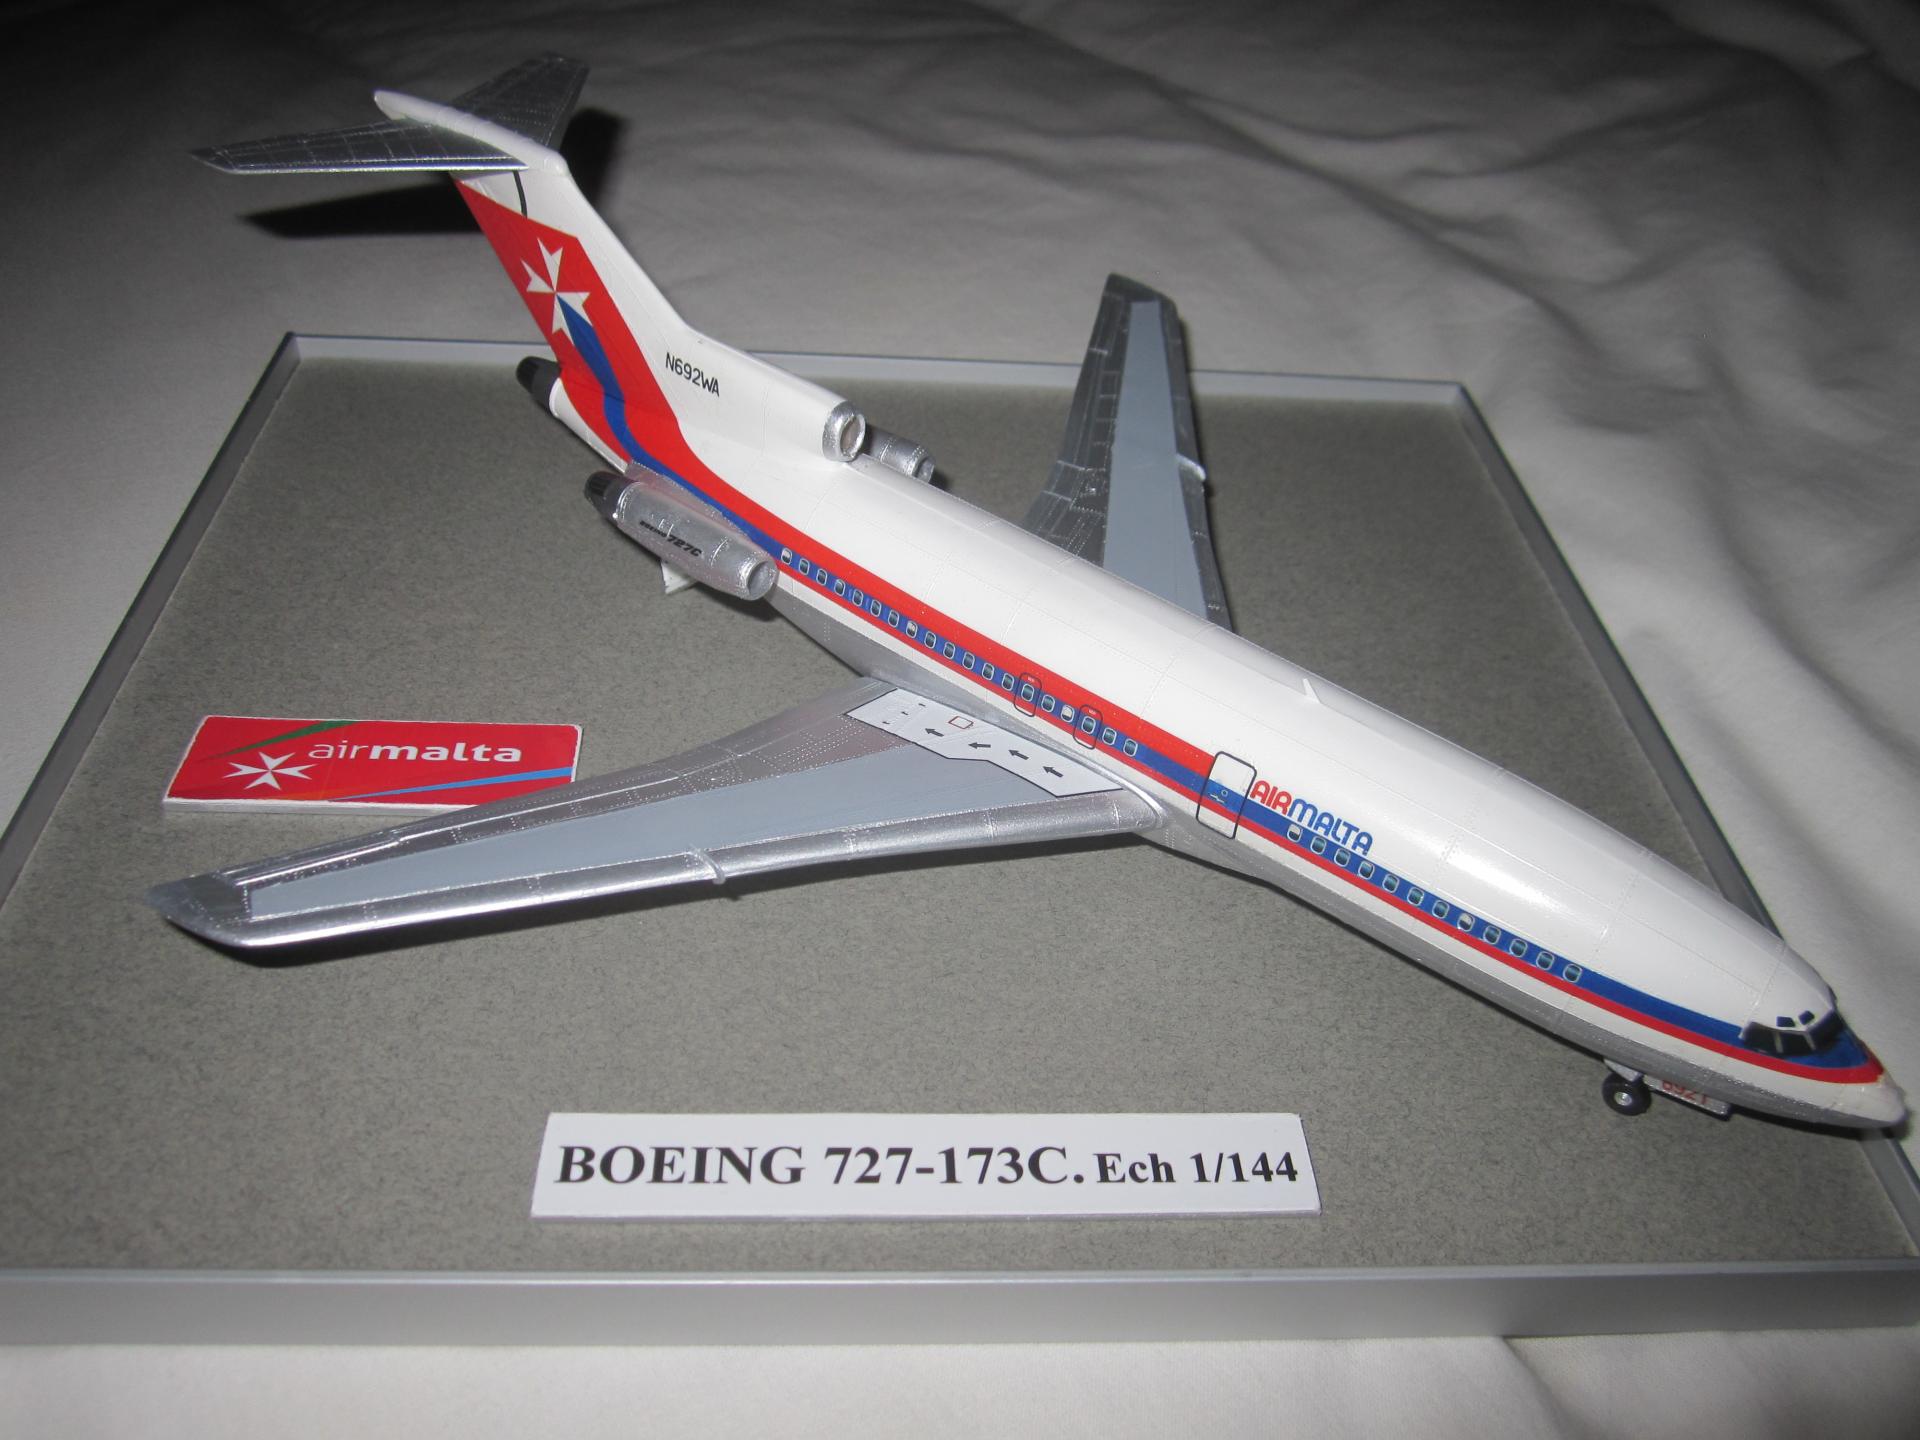 BOEING 727-173C